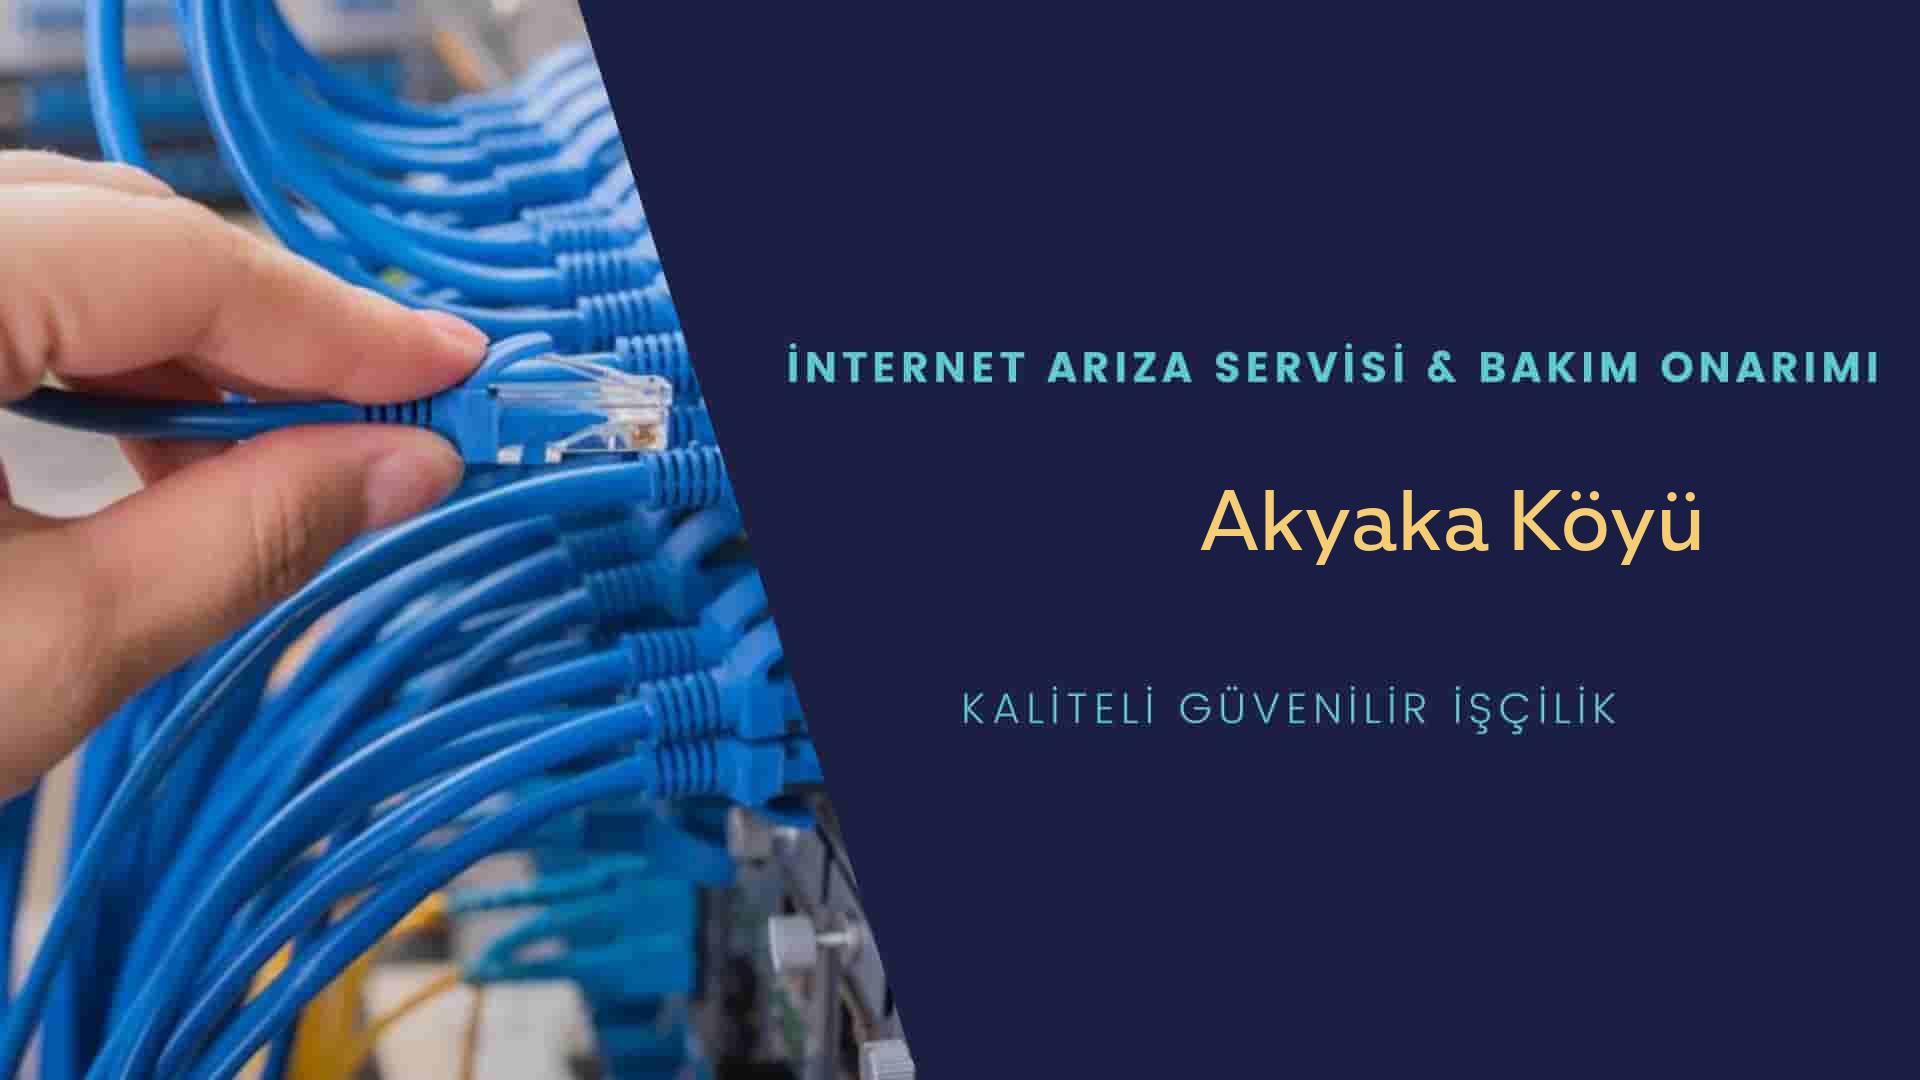 Akyaka Köyü internet kablosu çekimi yapan yerler veya elektrikçiler mi? arıyorsunuz doğru yerdesiniz o zaman sizlere 7/24 yardımcı olacak profesyonel ustalarımız bir telefon kadar yakındır size.